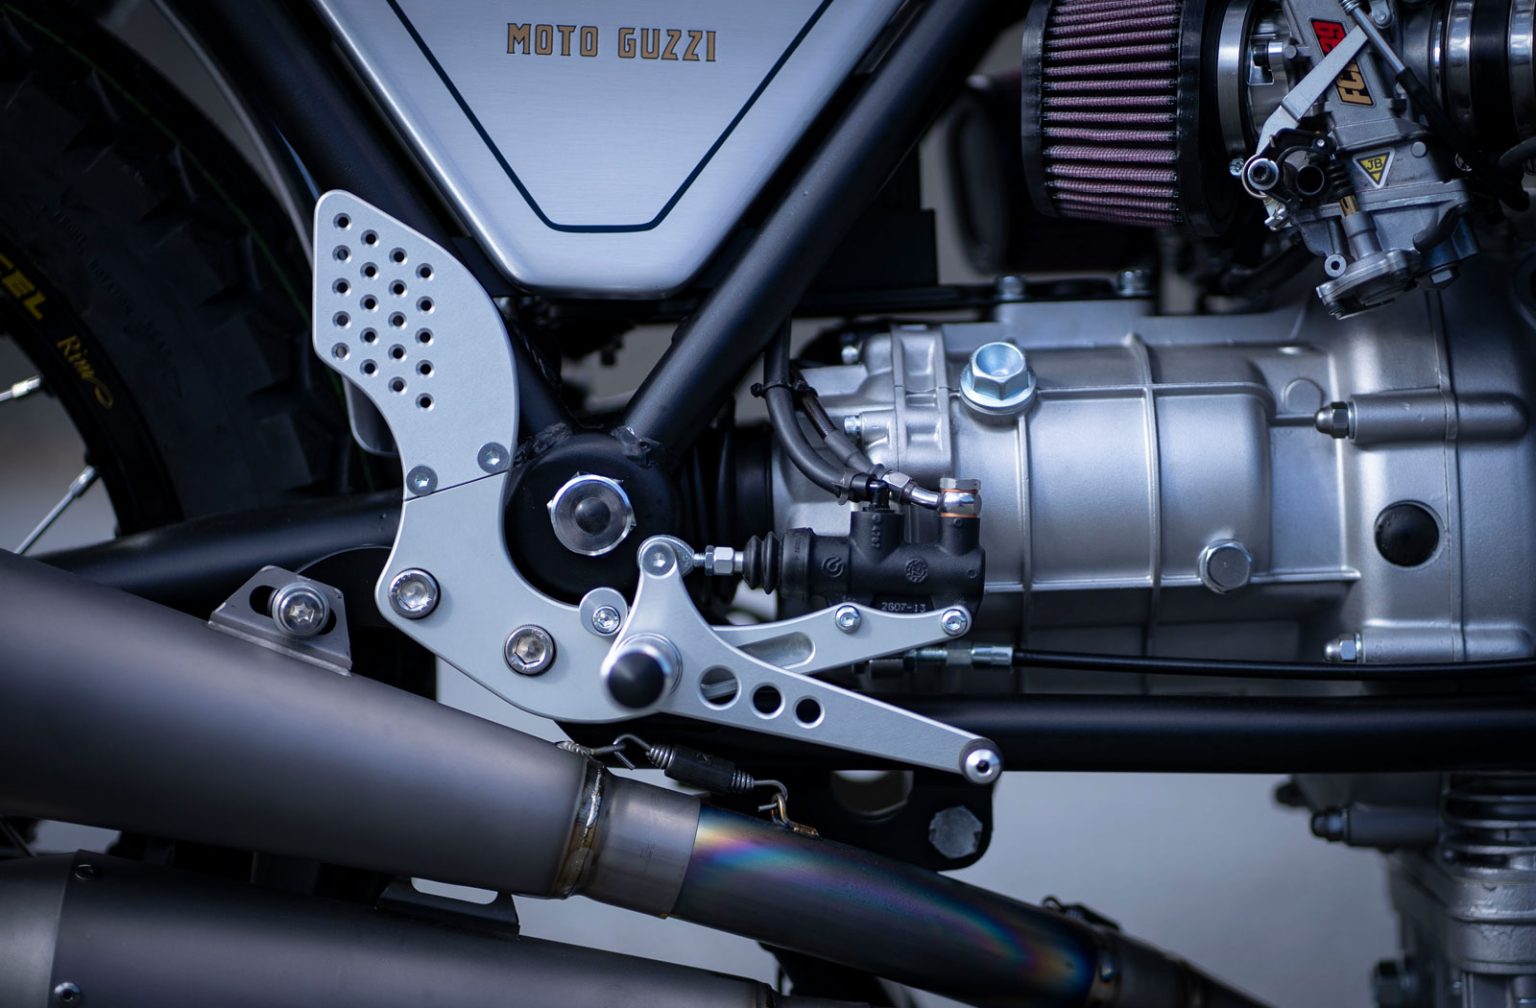 Мотоцикл Guzzi Le Mans 1000 в стиле Brat из Японии довольно приятен для глаз